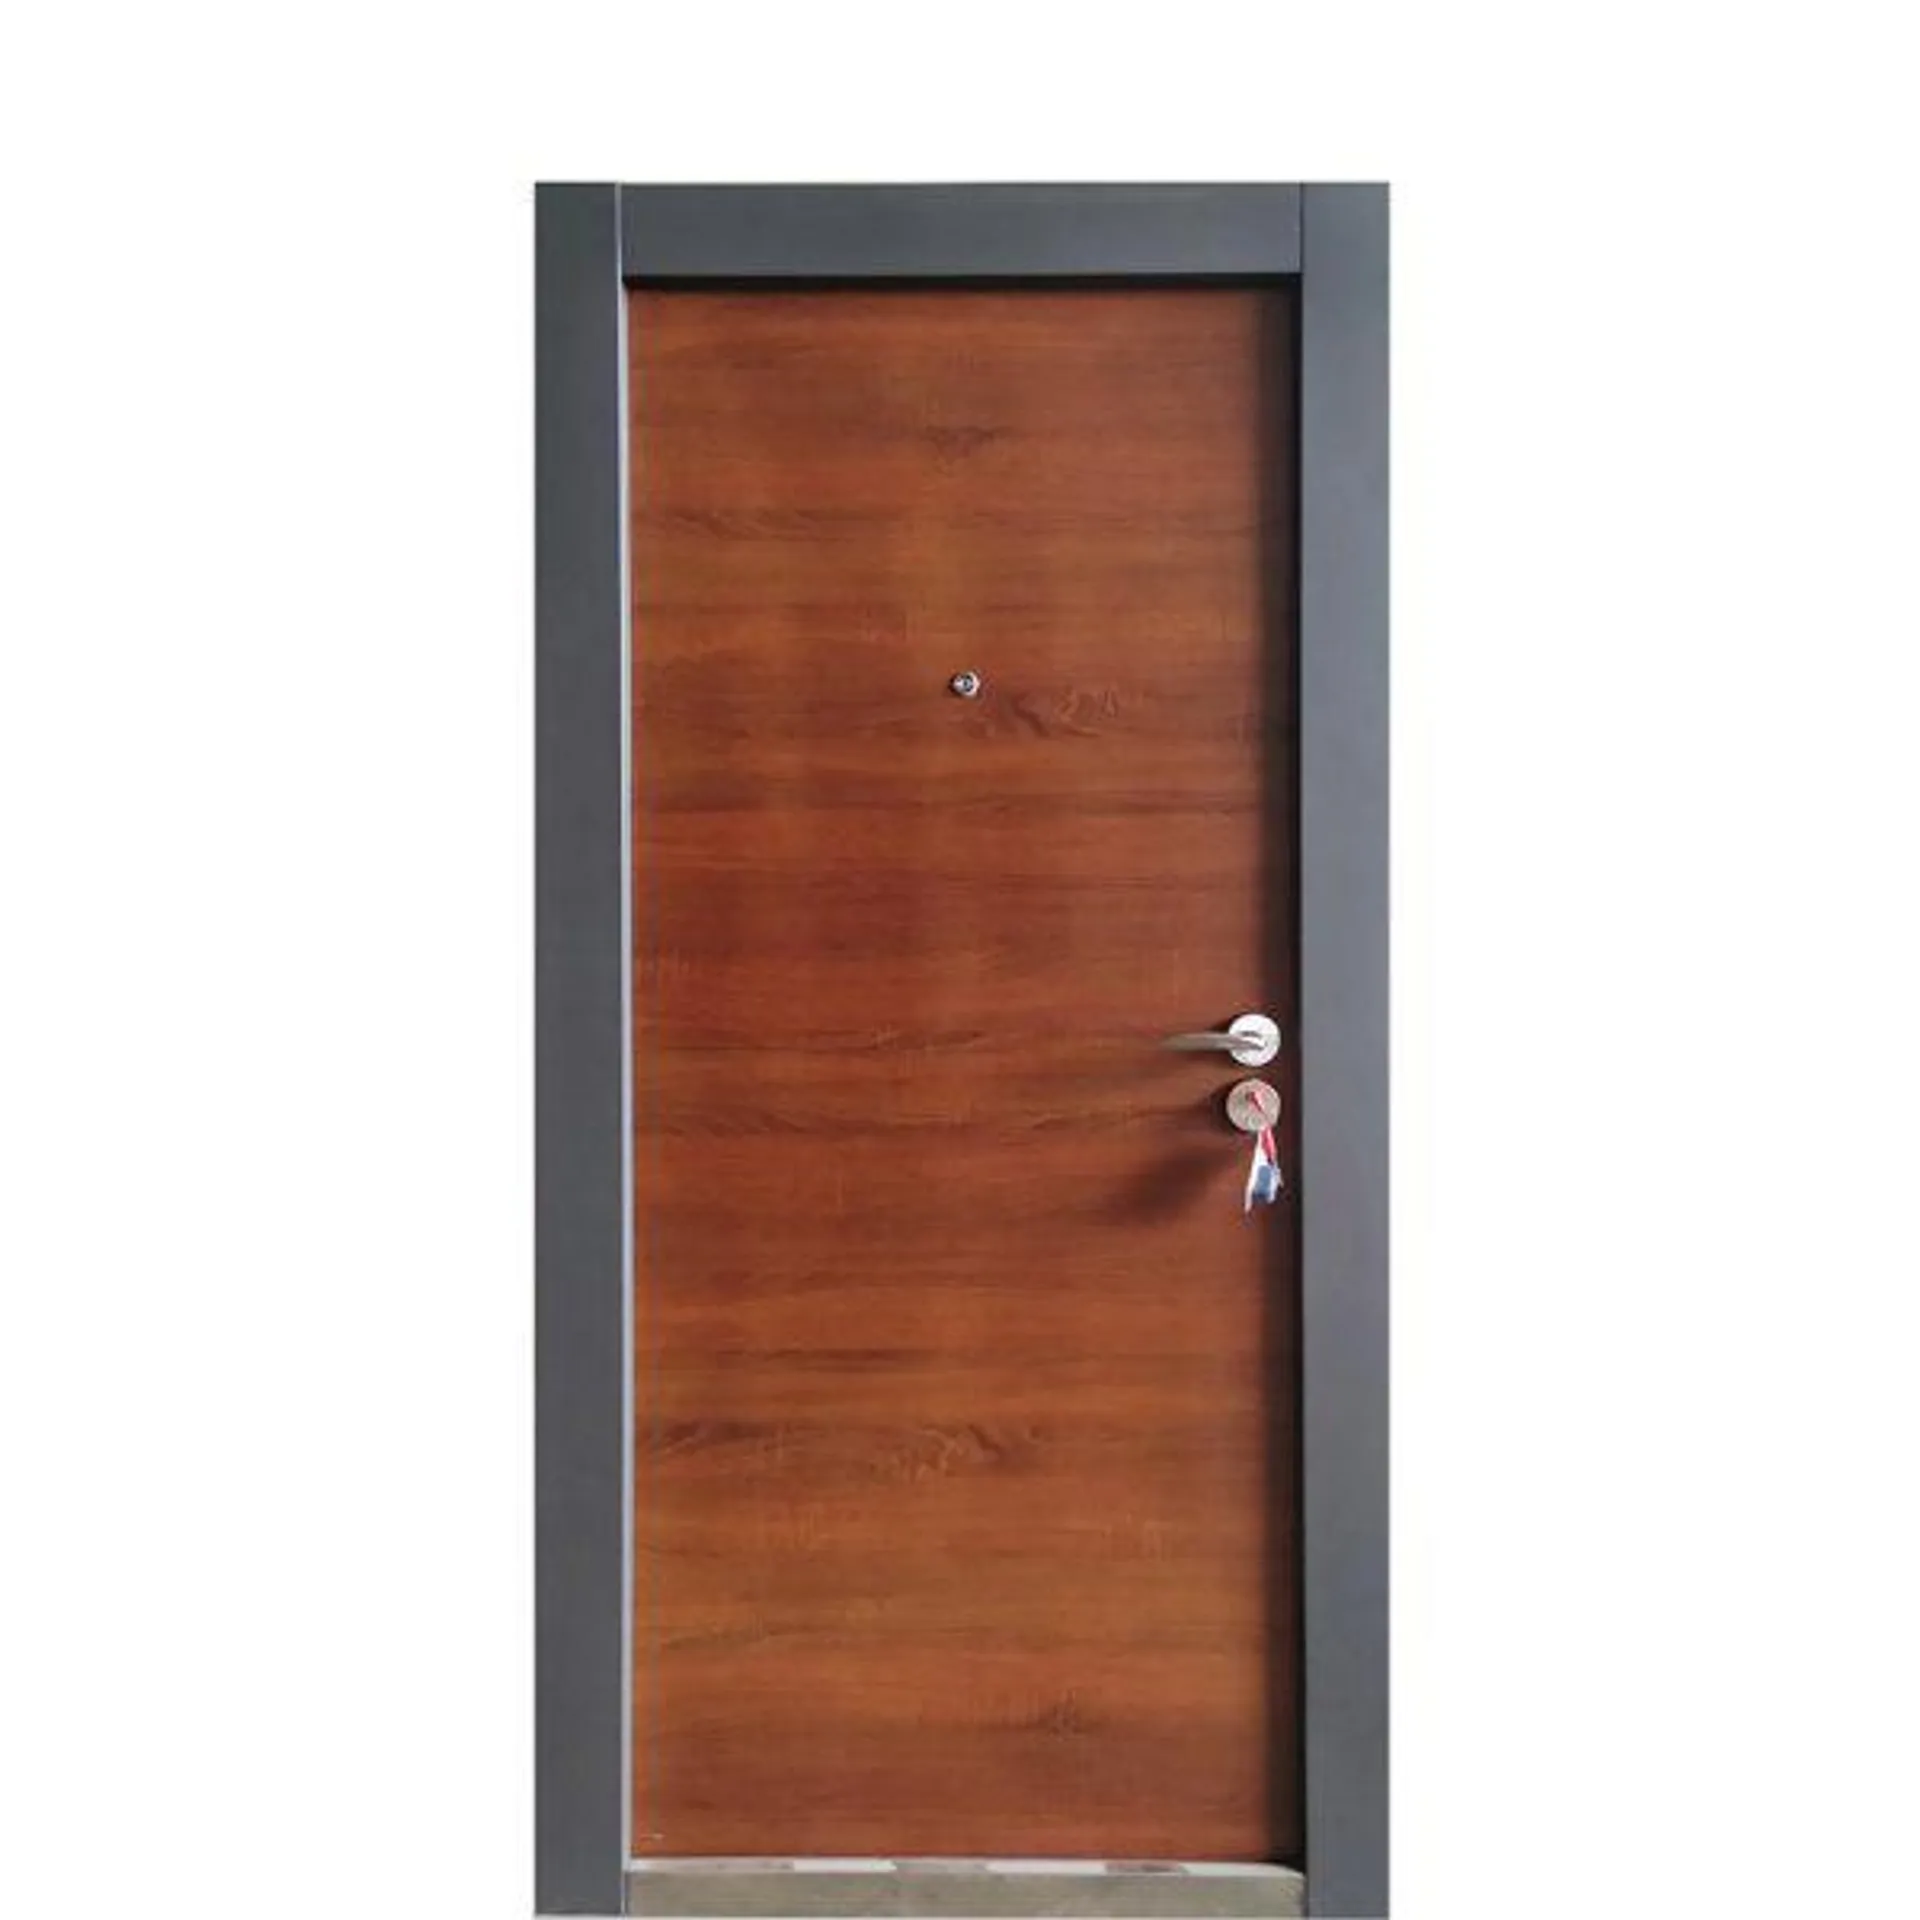 Vrata protuprovalna Lari, smeđa, 2050x960x70 mm (lijeva/desna)